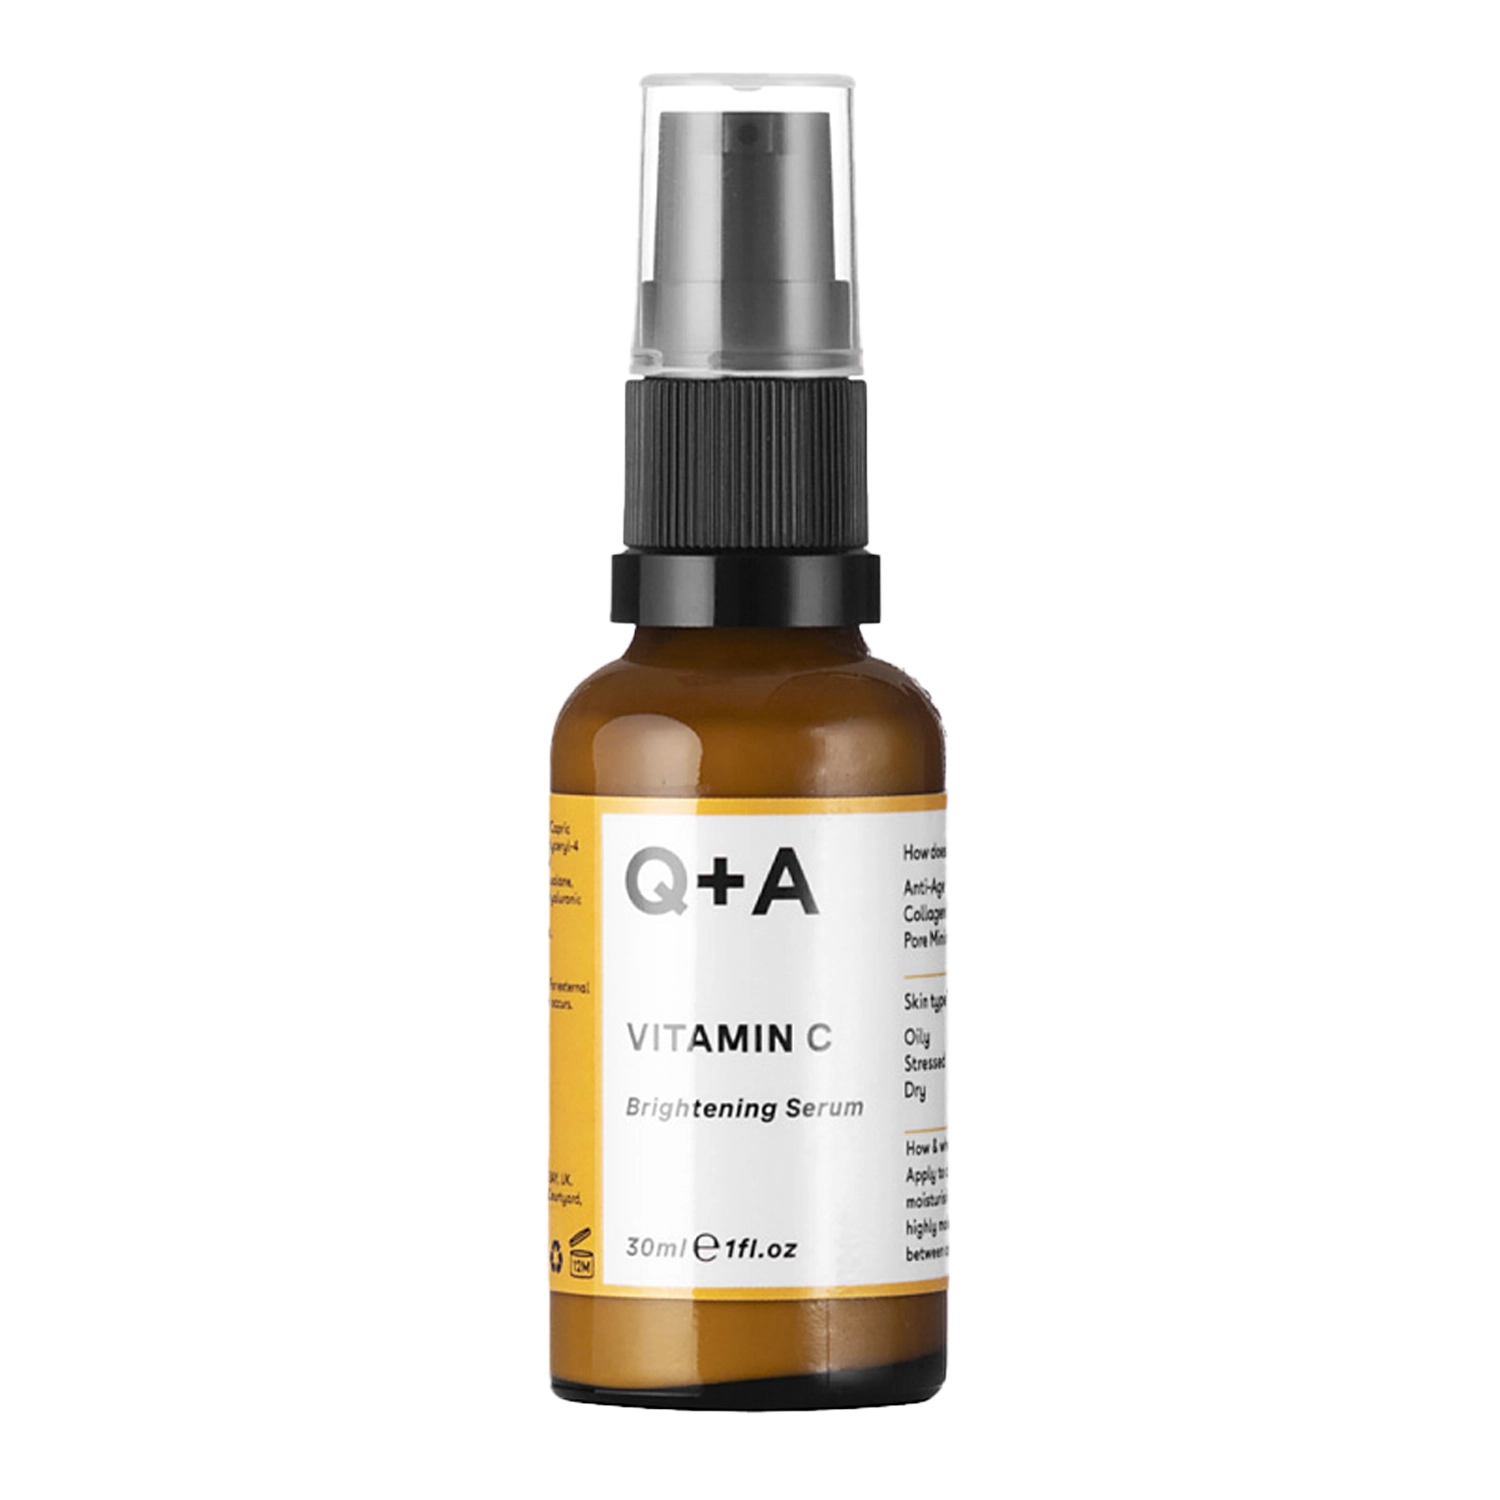 Q+A - Vitamina C - Brightening Serum - Ser facial de iluminare cu vitamina C - 30ml